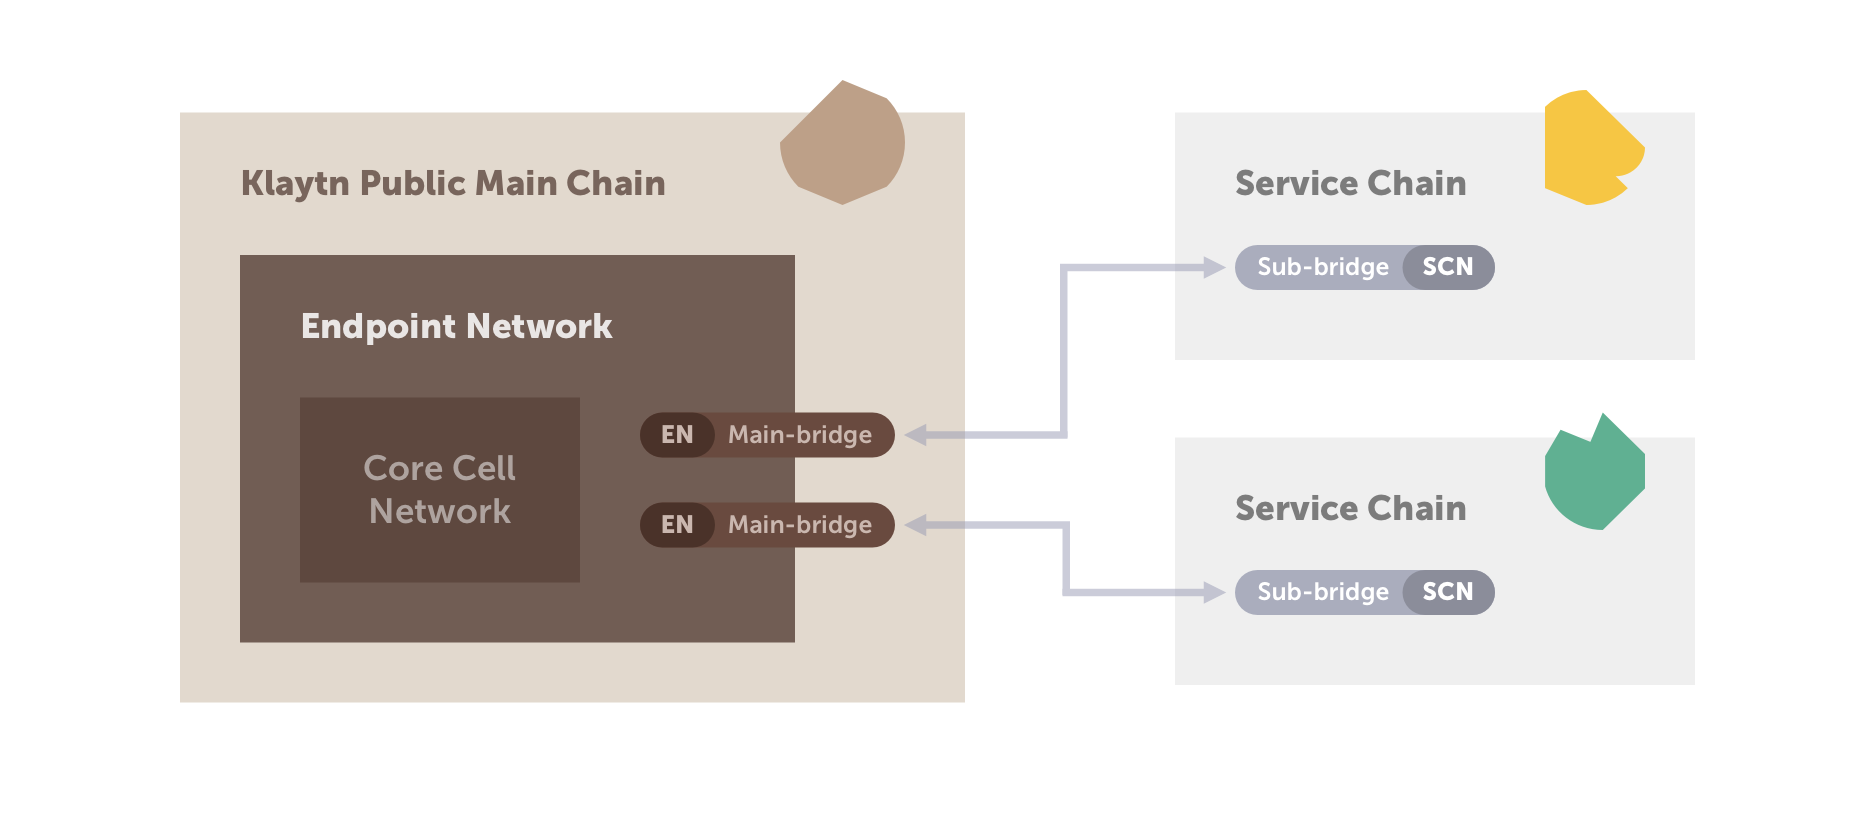 그림 2. 메인/서브 브리지 모델을 사용한 메인 체인 및 서비스 체인 연결